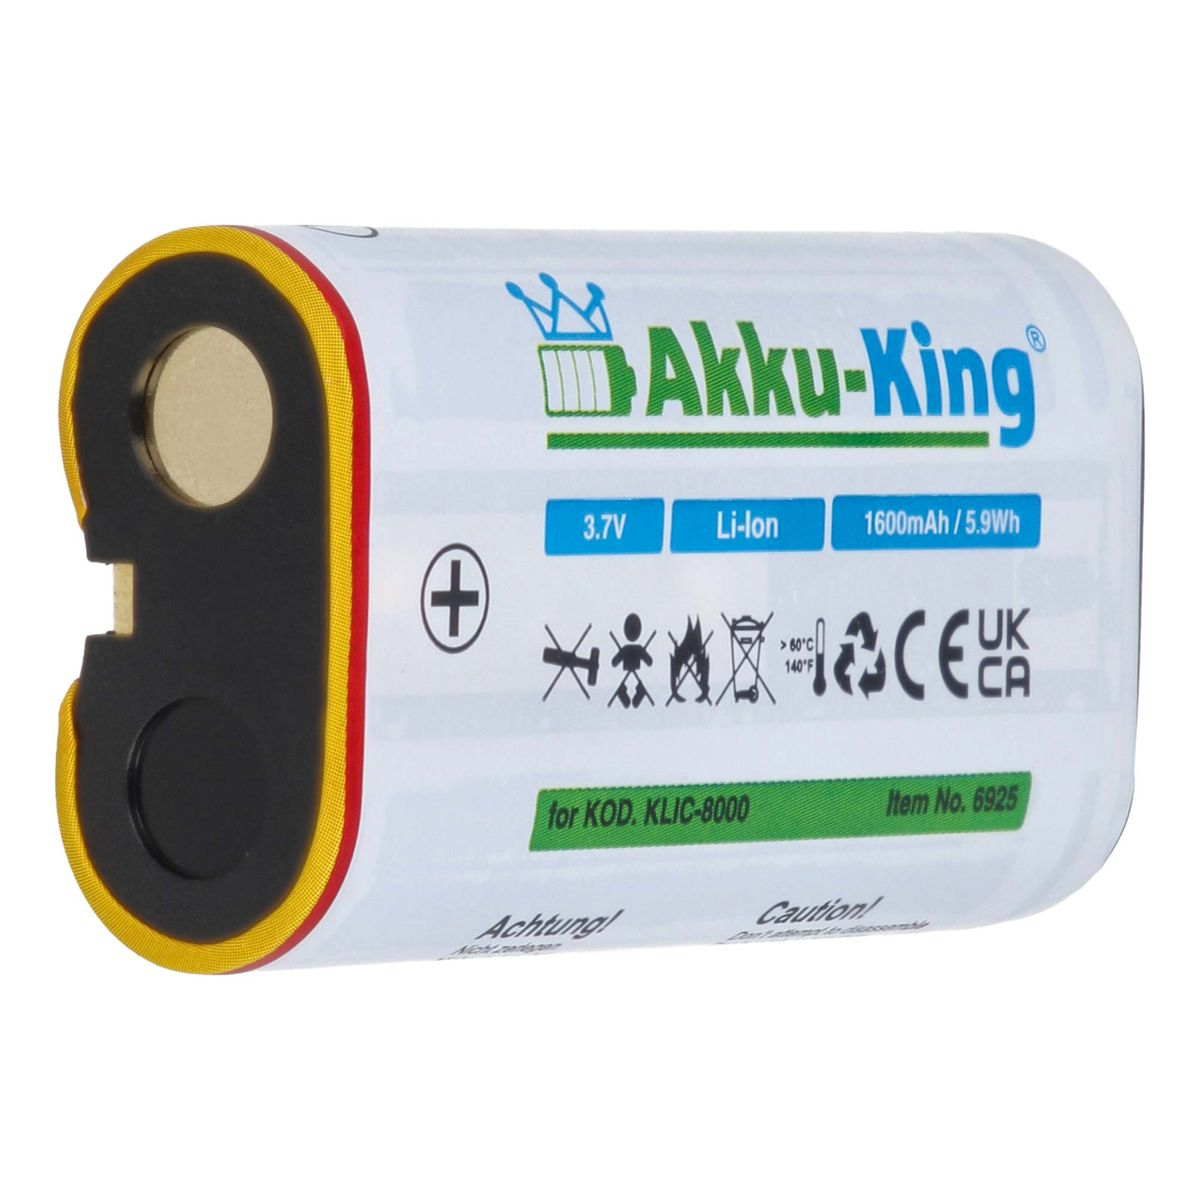 mit Klic-8000 1600mAh Li-Ion kompatibel Kamera-Akku, AKKU-KING Kodak Akku Volt, 3.7